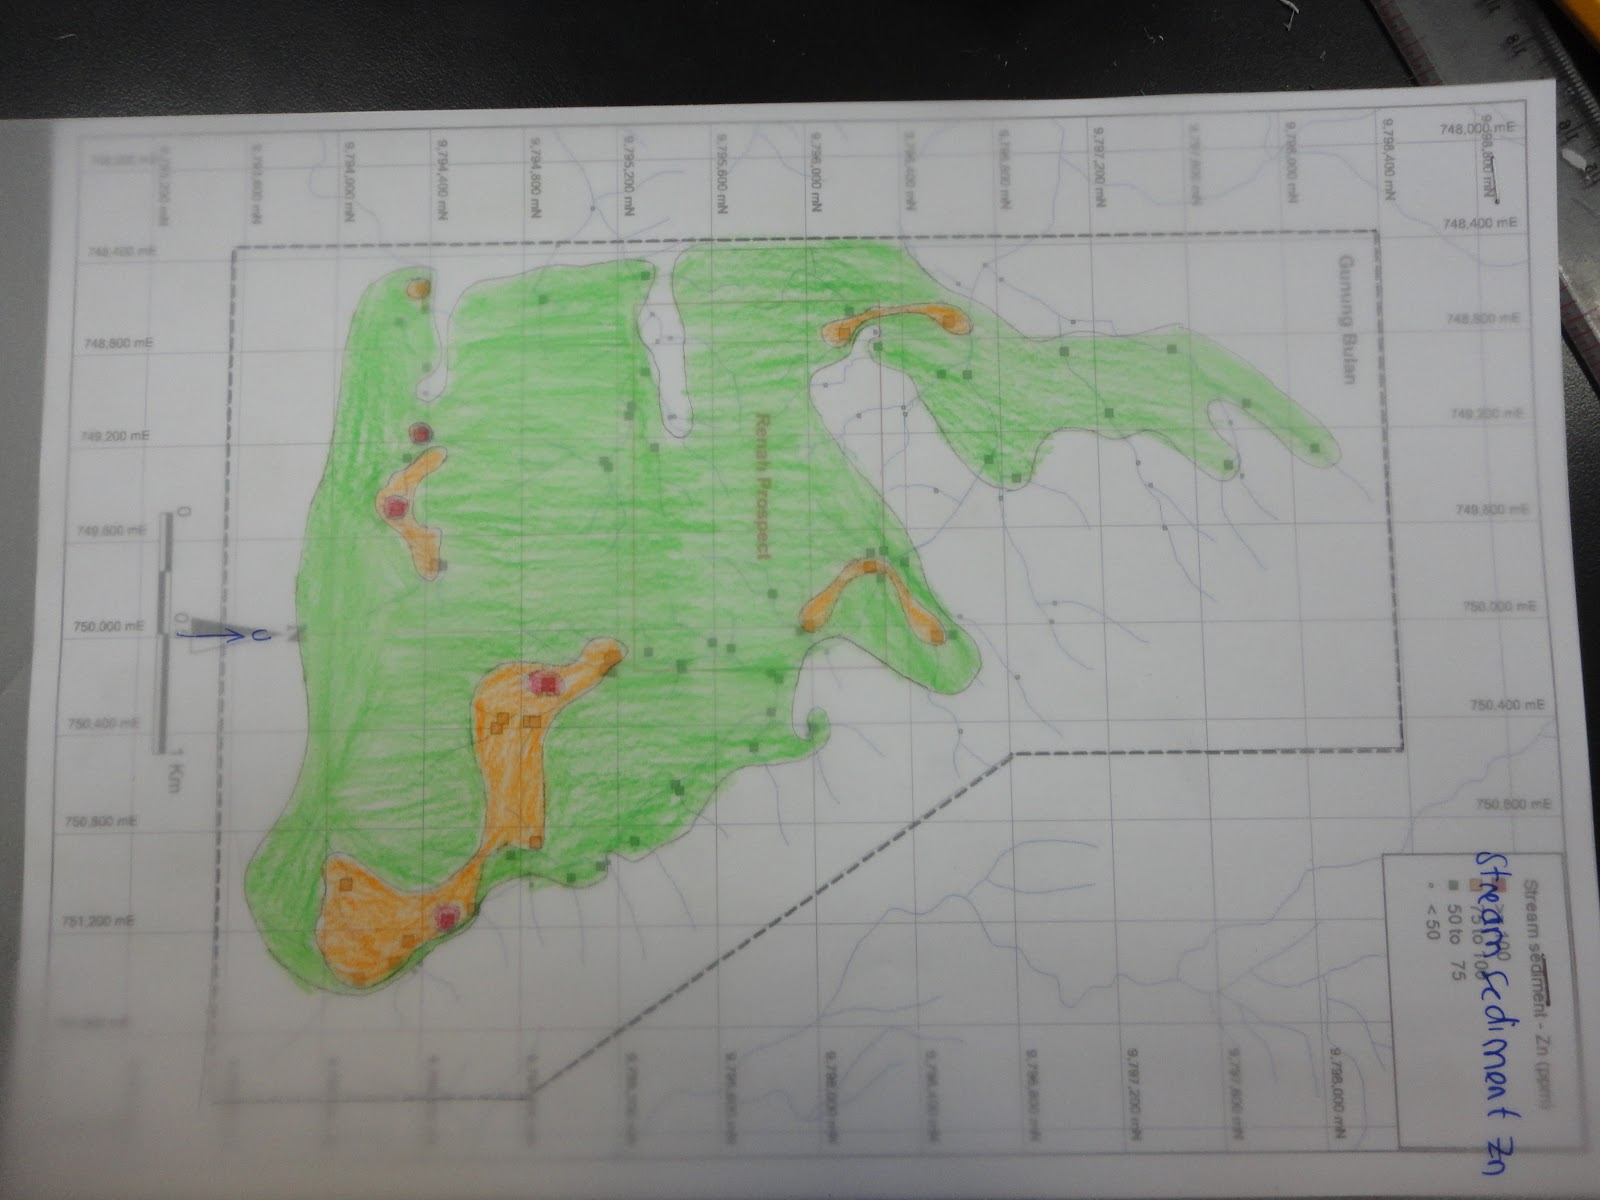 Salah satu peta anomali Soil Geochemistry dari 12 peta anomali yang saya dan Fahmi hasilkan saat OGI 2012 bidang Mining